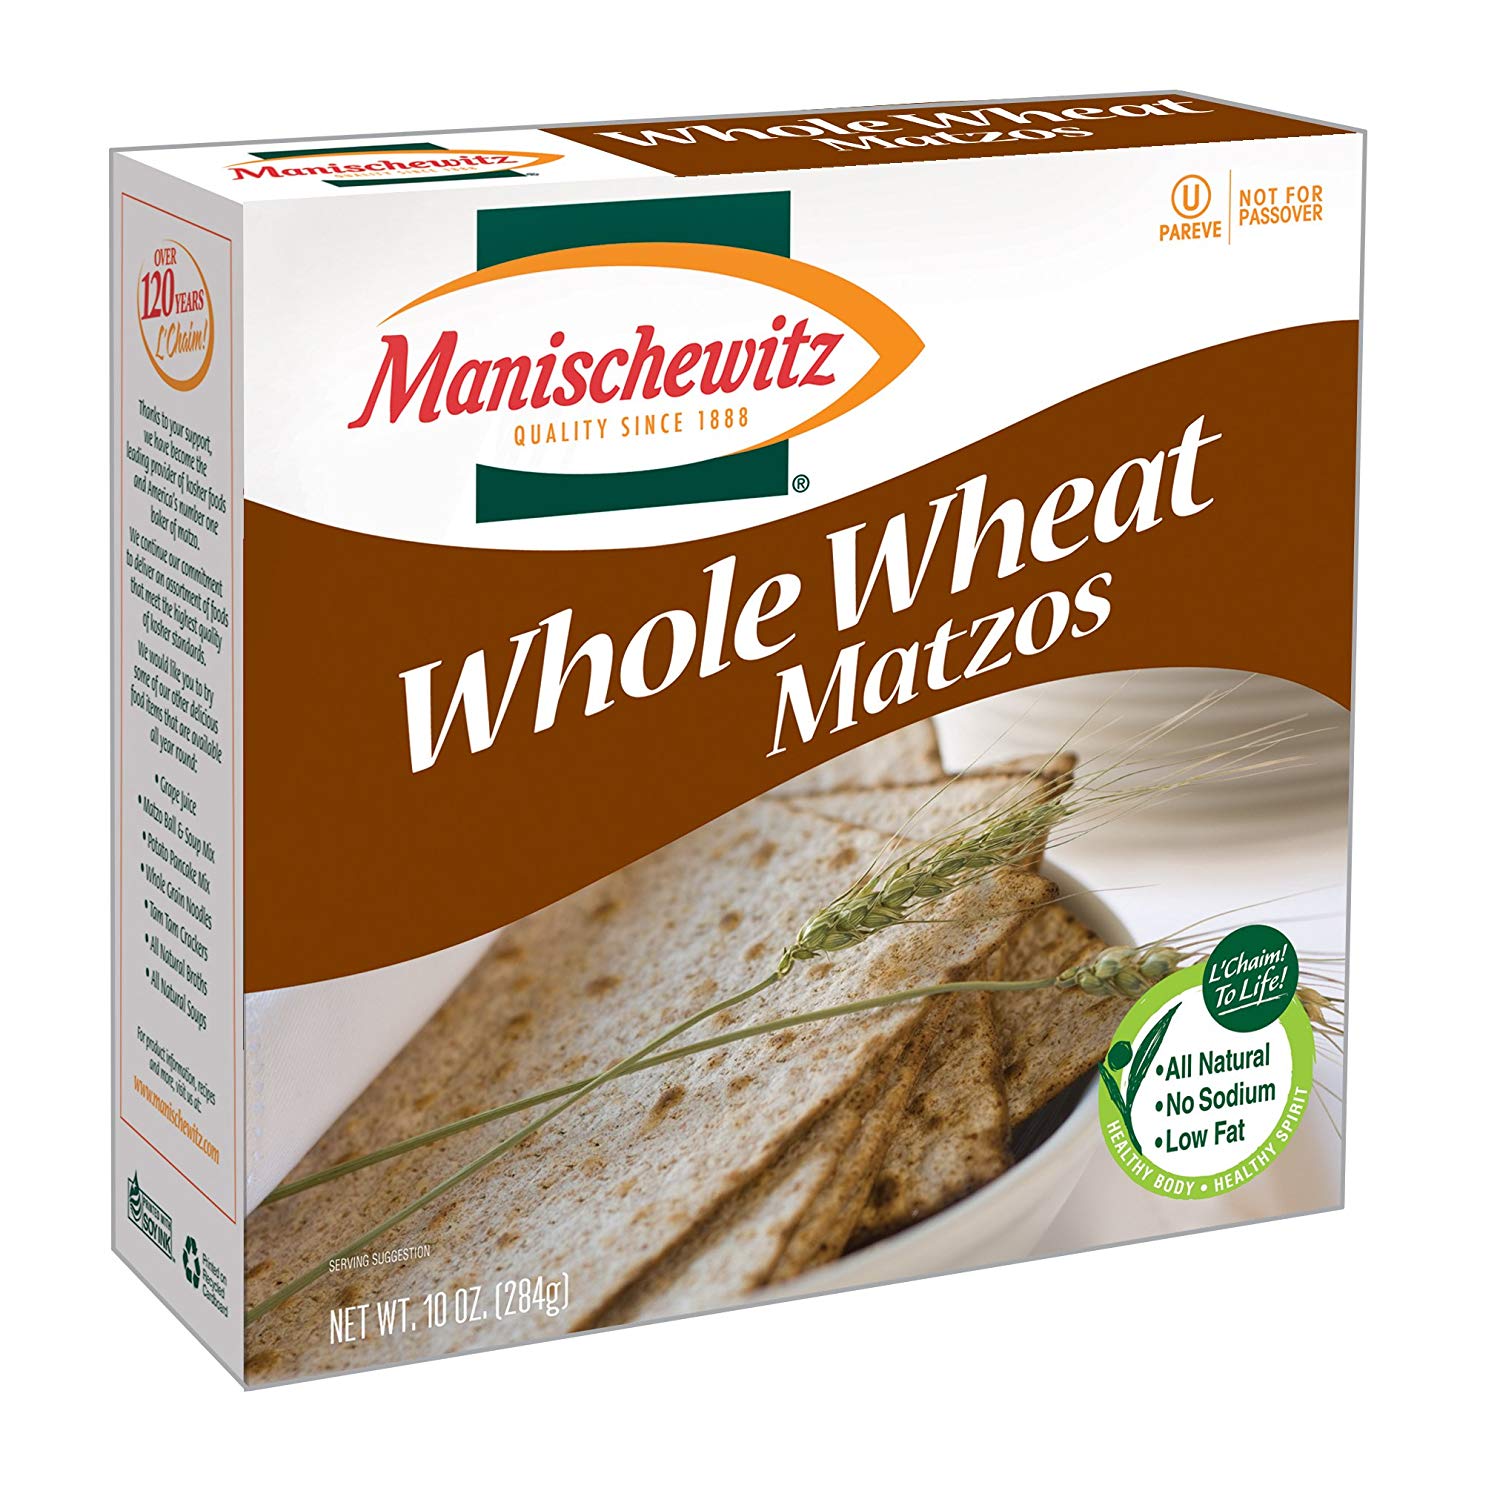 Whole grain matzo